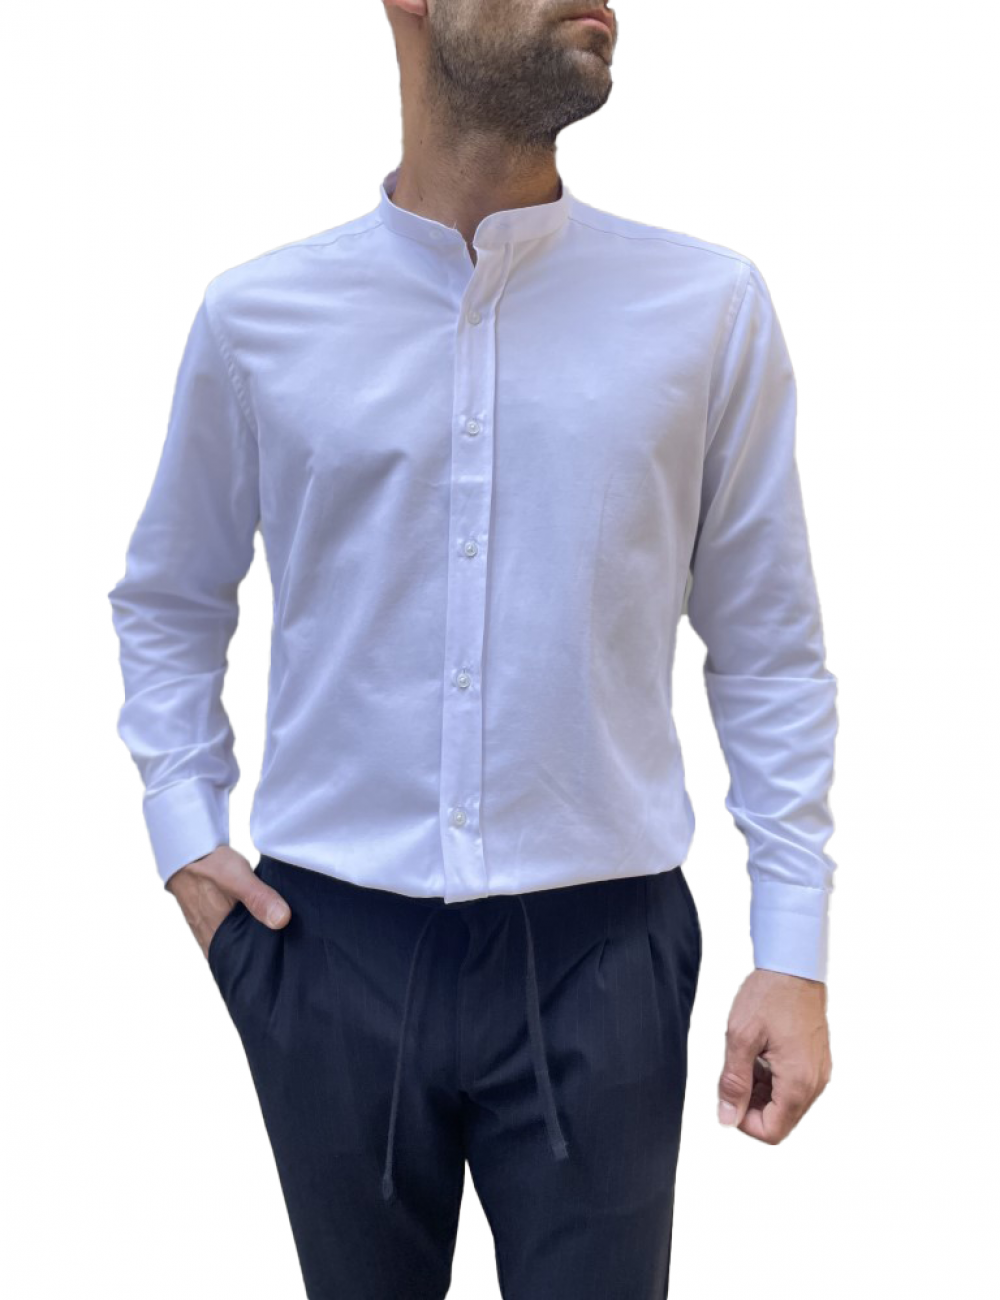 Ανδρικό λευκό μάο γιακά πουκάμισο Modern Fit 243014